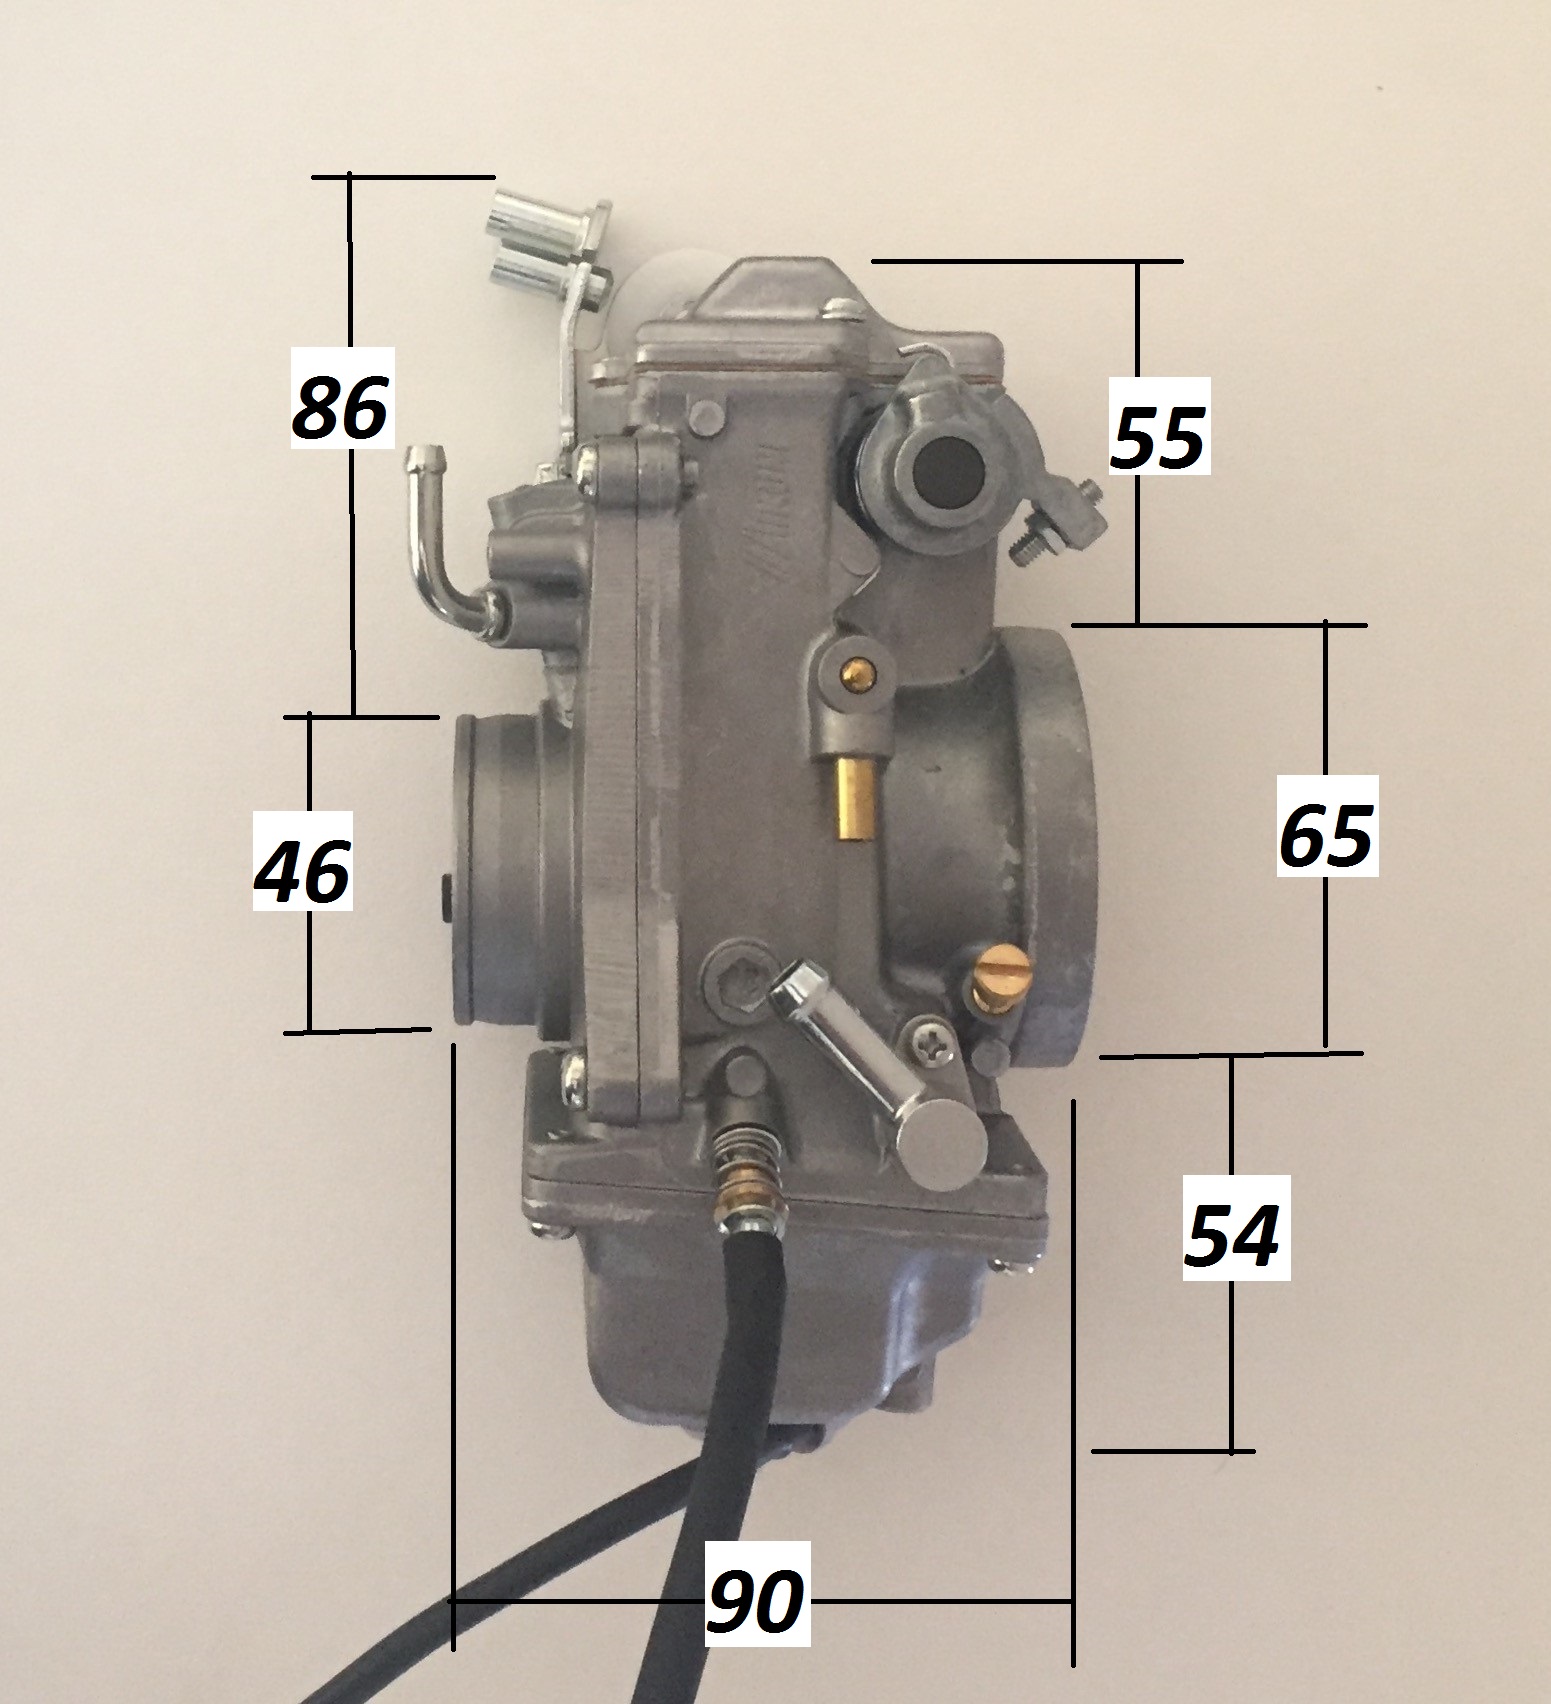 1. TM42-6, HSR 42mm Mikuni Carburetor, Natural or Polished/Chrome